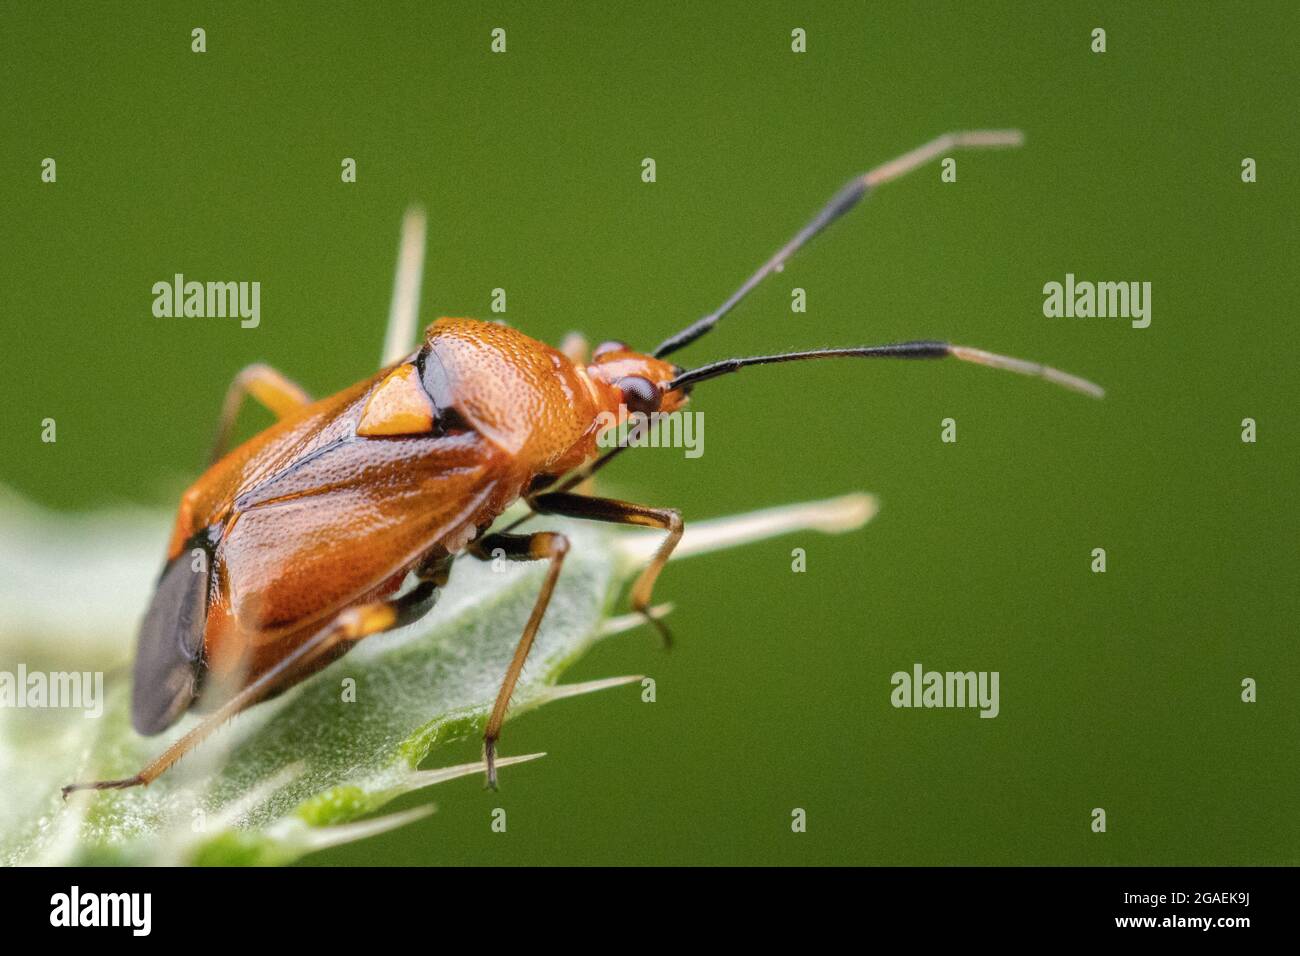 Deraeocoris ruber, Miridae - lucente bug di piante arancioni arroccato su un thistle, fauna selvatica del Regno Unito Foto Stock